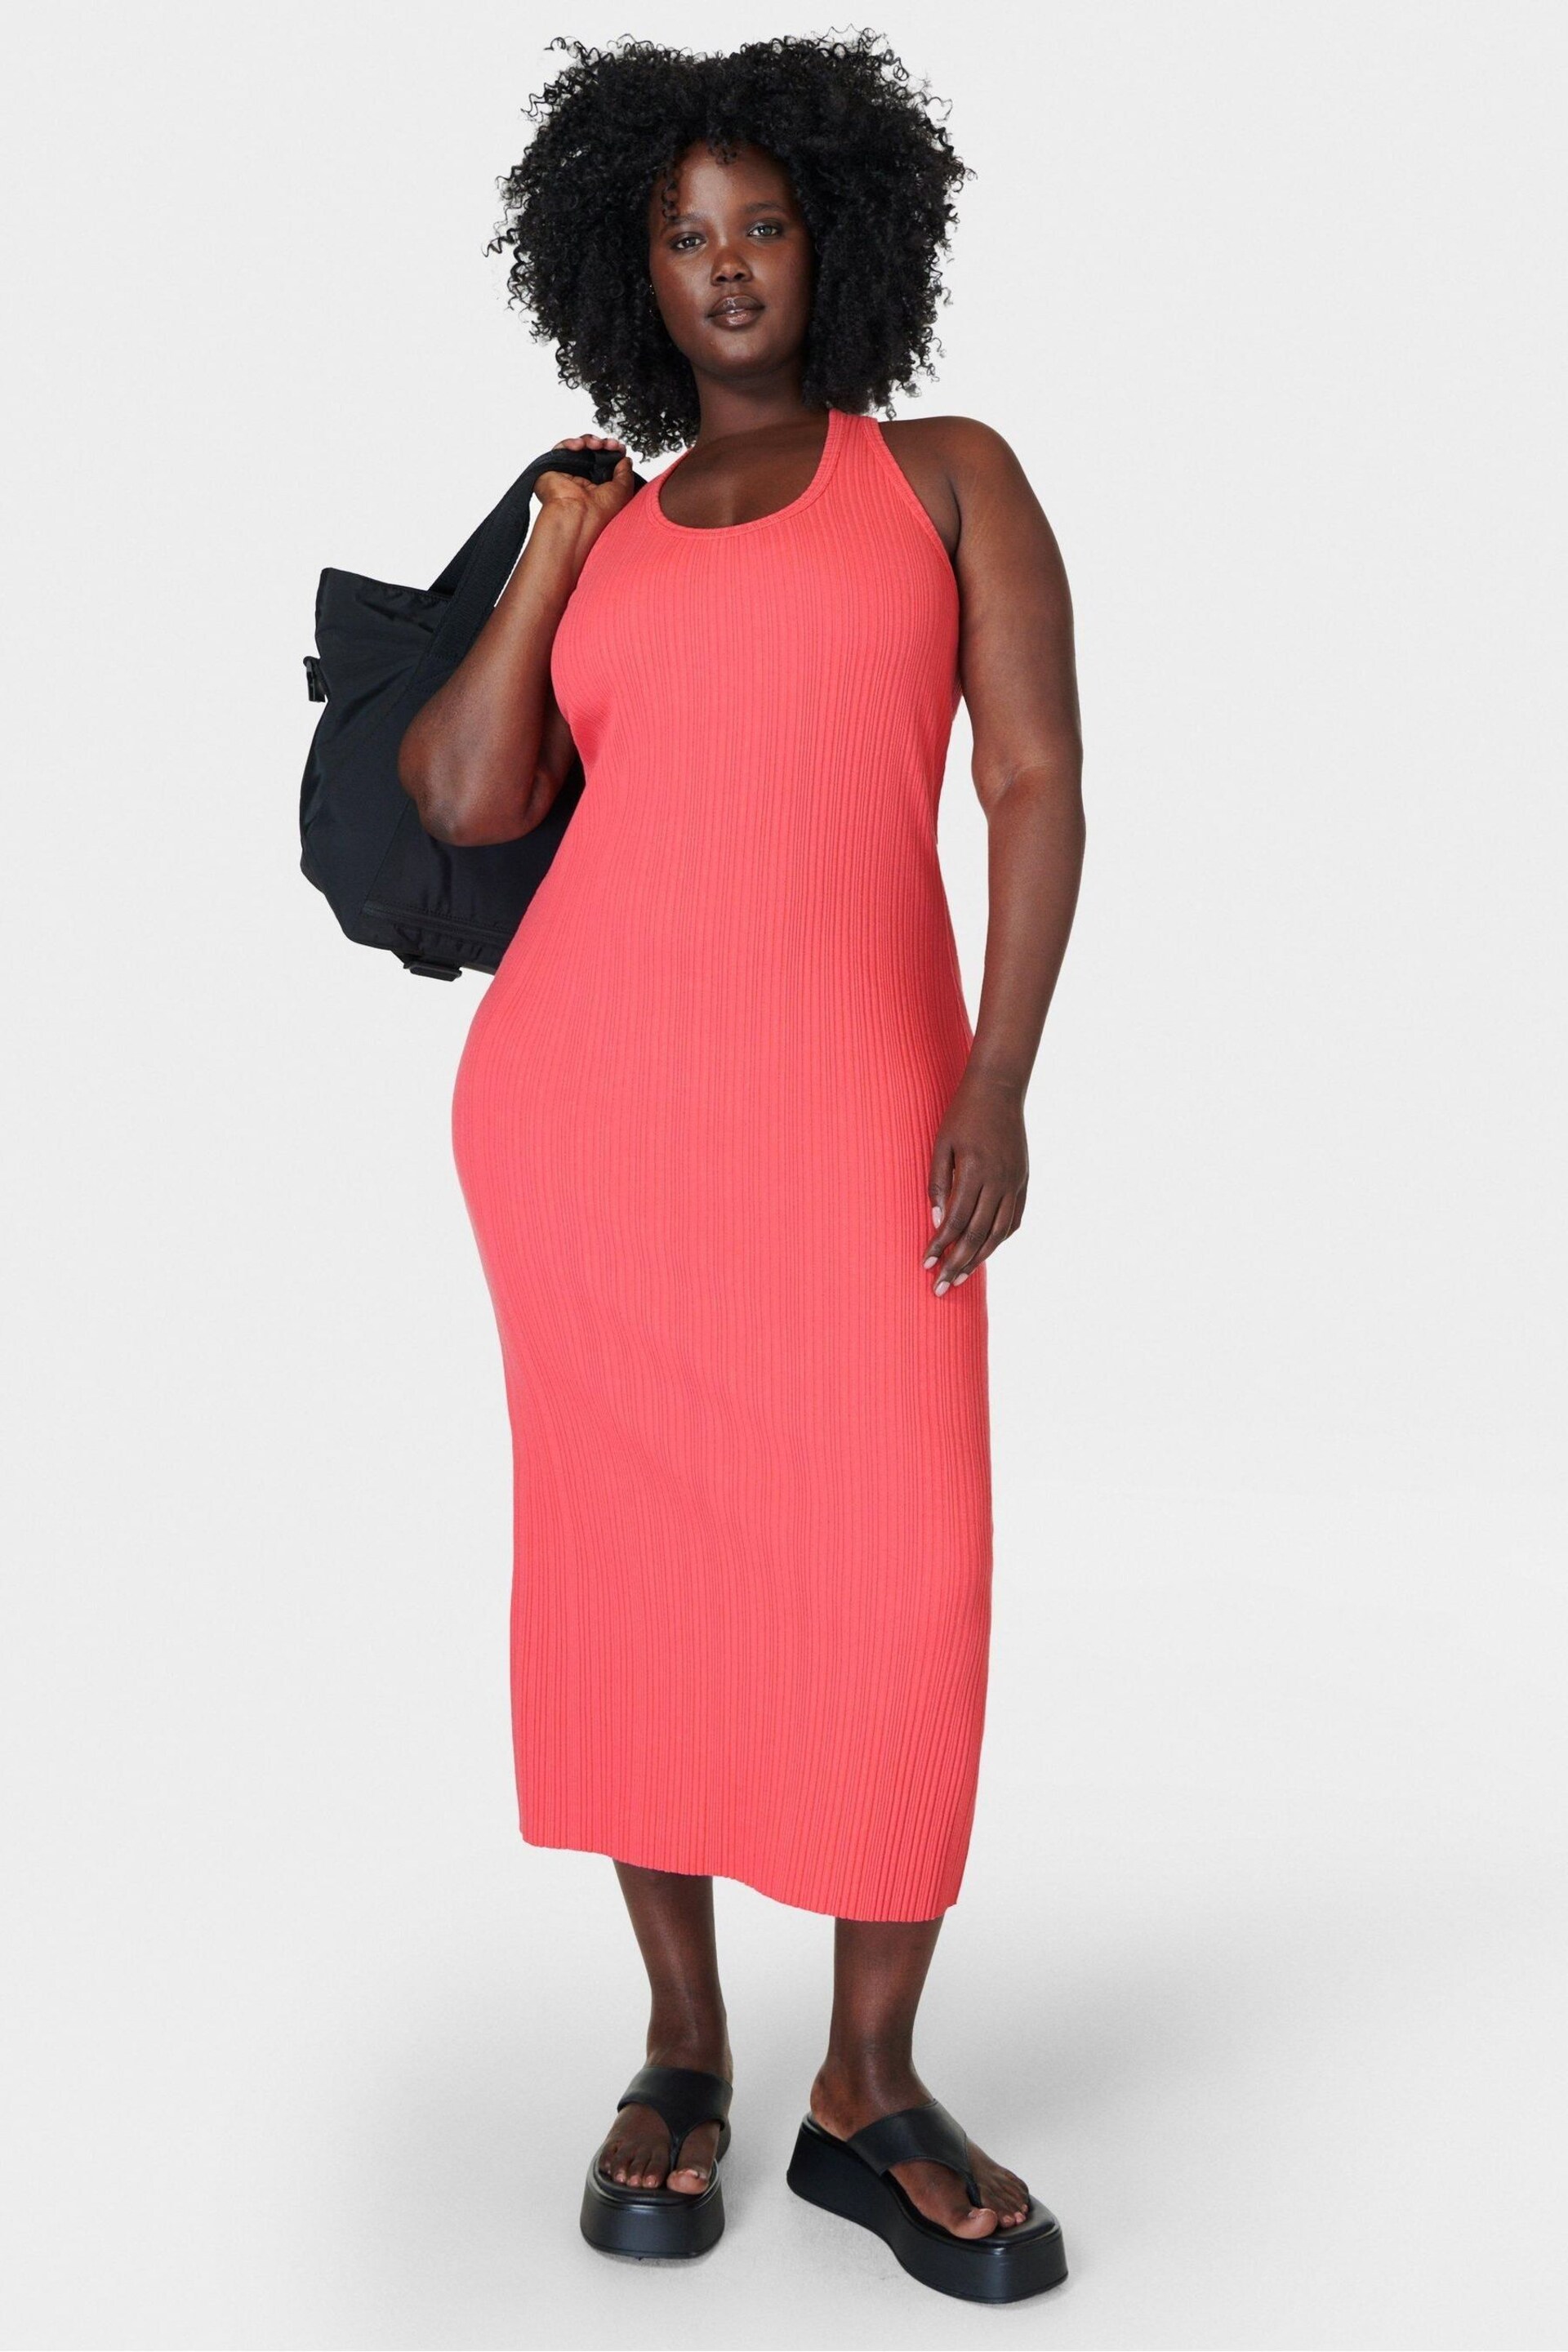 Sweaty Betty Coral Pink Resort Rib Tank Dress - Image 1 of 6